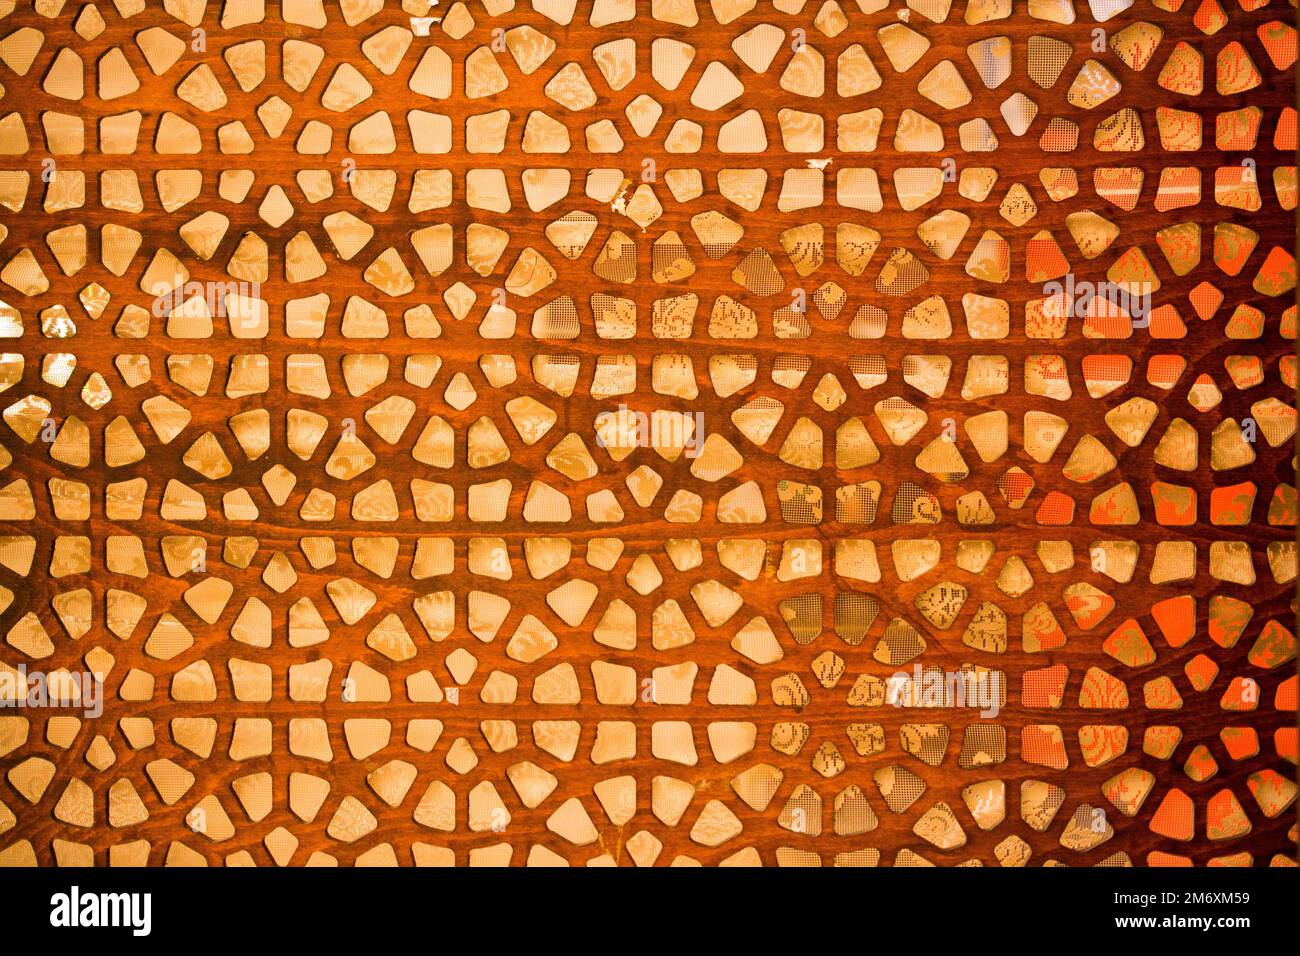 Ottoman Turkish  art with geometric patterns Stock Photo